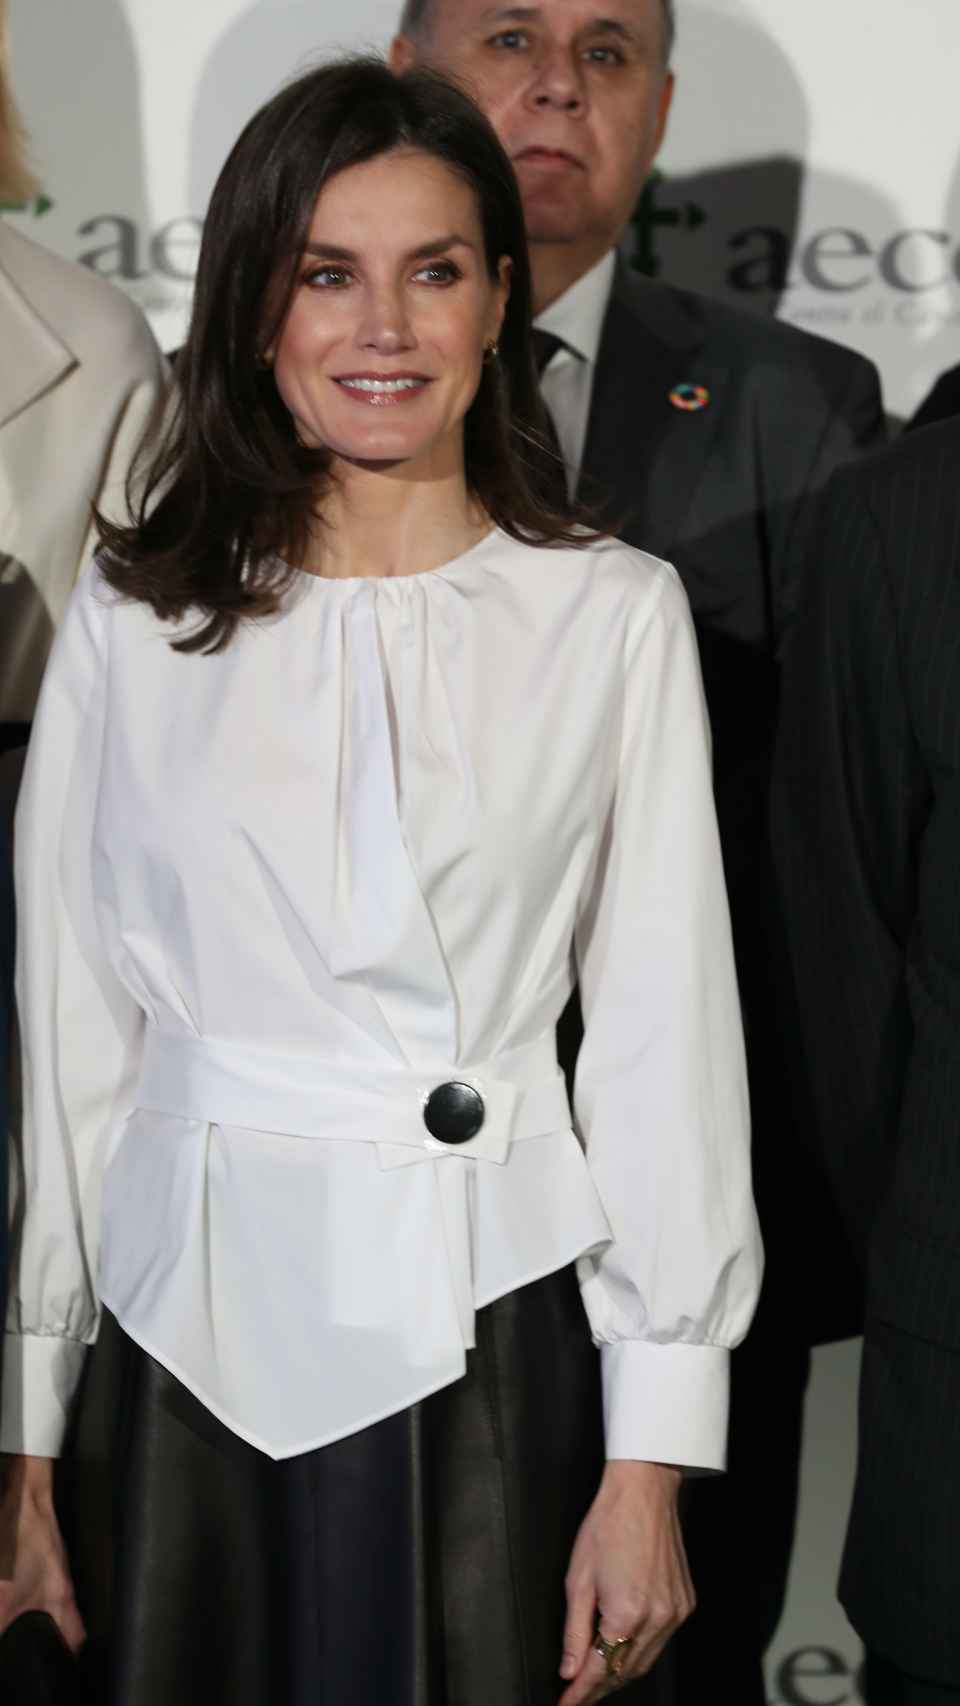 La reina Letizia con camisa blanca de estreno.